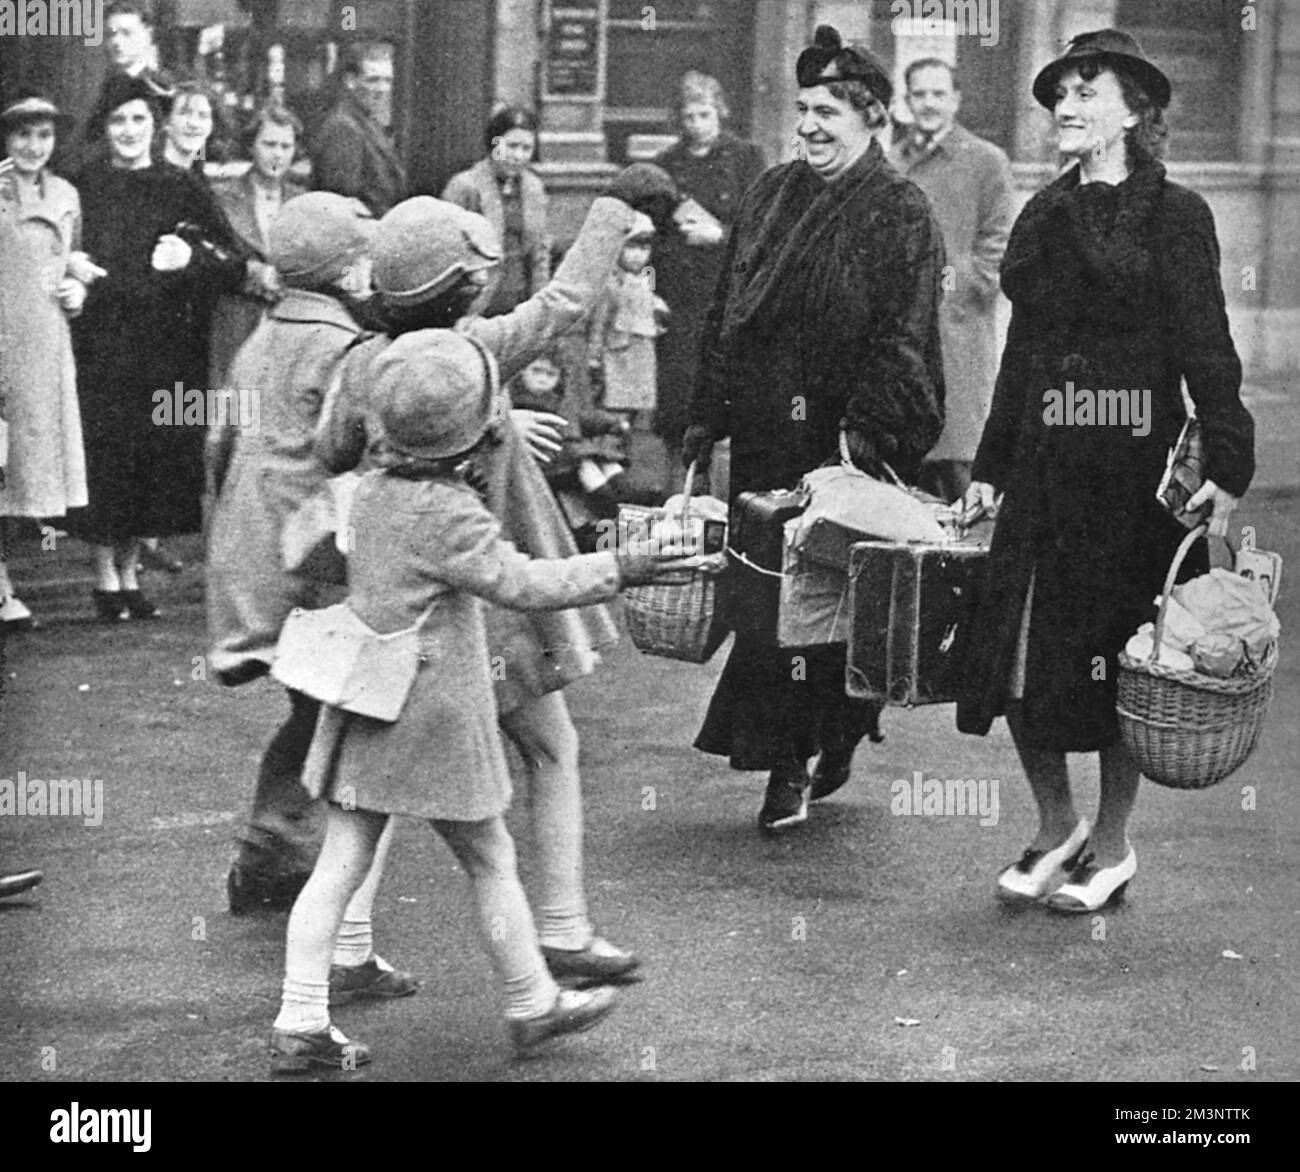 Szene, in der 1000 Eltern aus Tottenham mit dem Bus ihre evakuierten Kinder in Saffon Walden in Essex sahen. Das Bild zeigt das Treffen einiger Kinder und ihrer Eltern vor dem Rathaus. Datum: 1939 Stockfoto